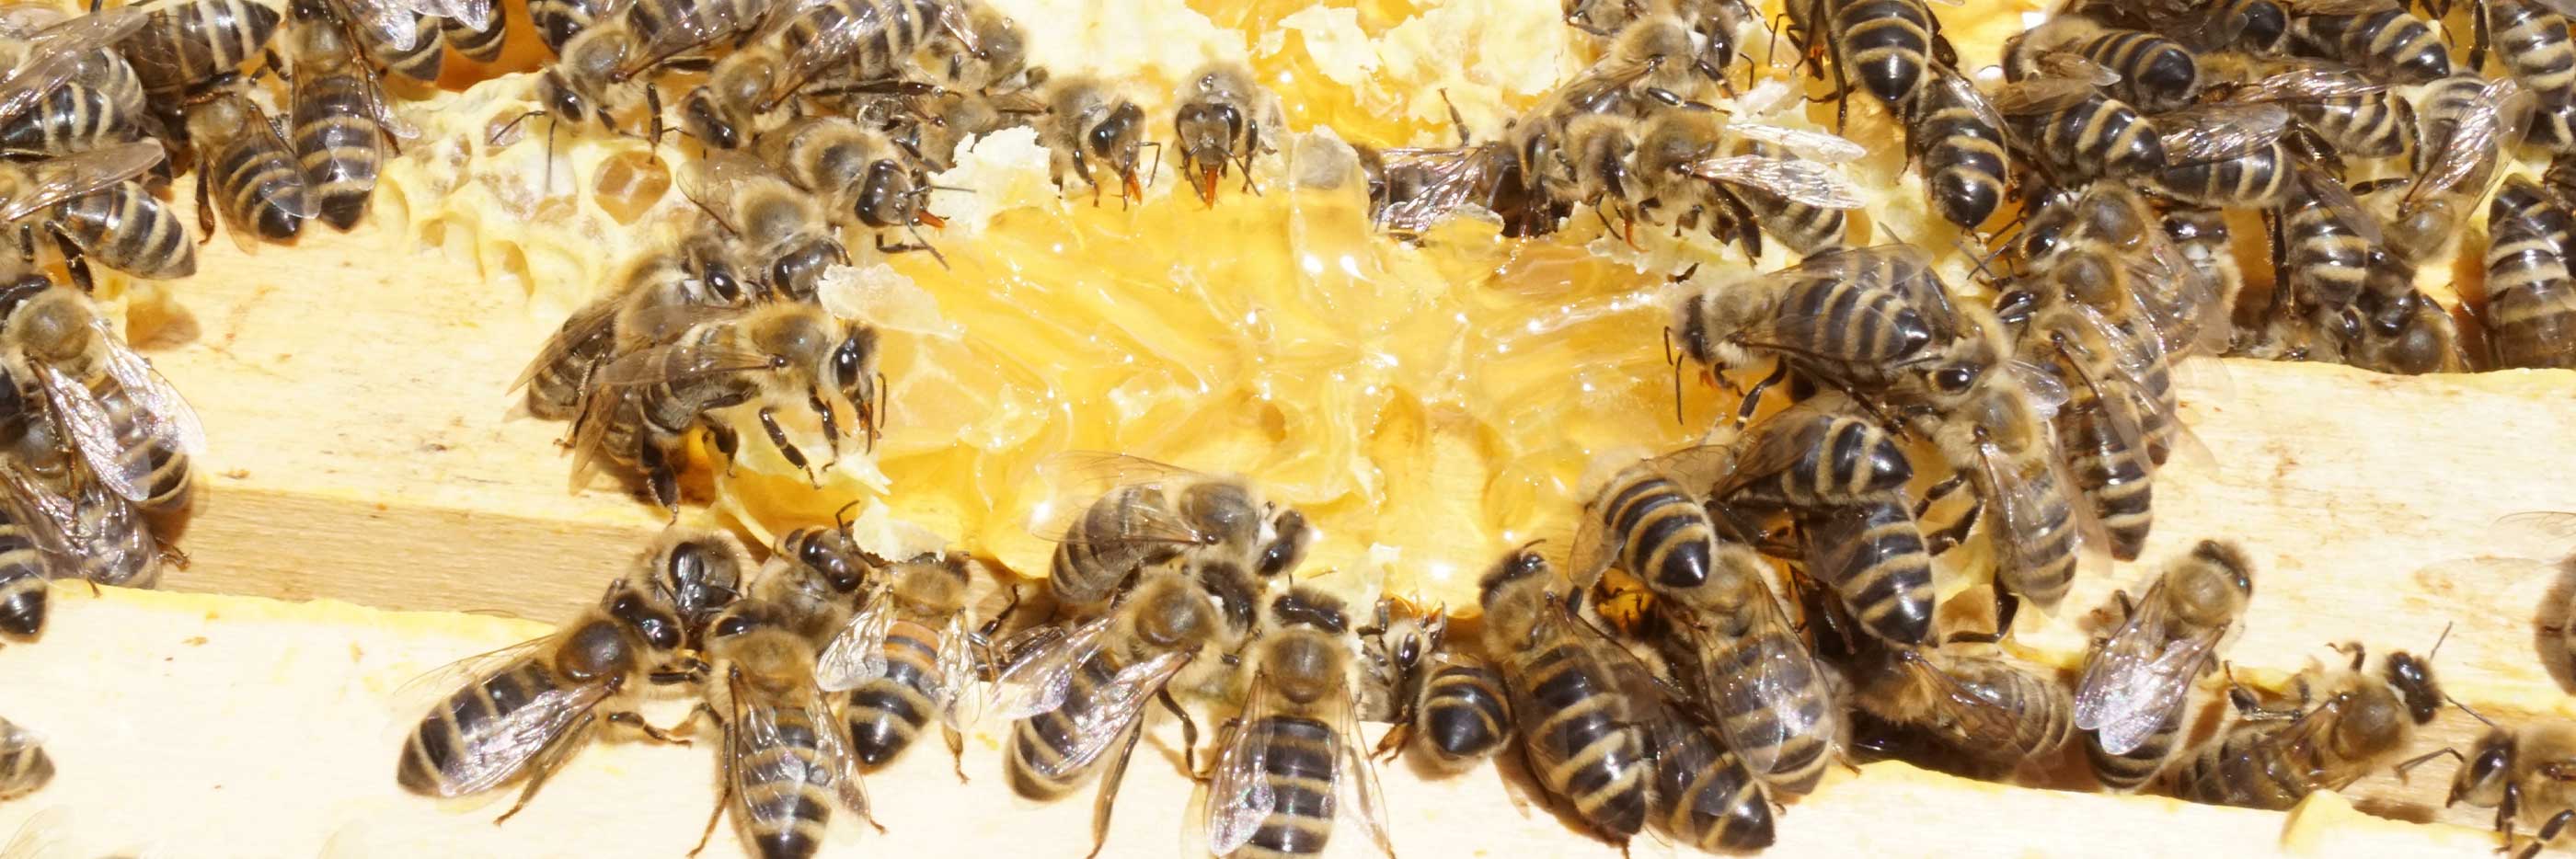 Das Bienenvolk sammelt den Honig aus den offenen Waben | mey®